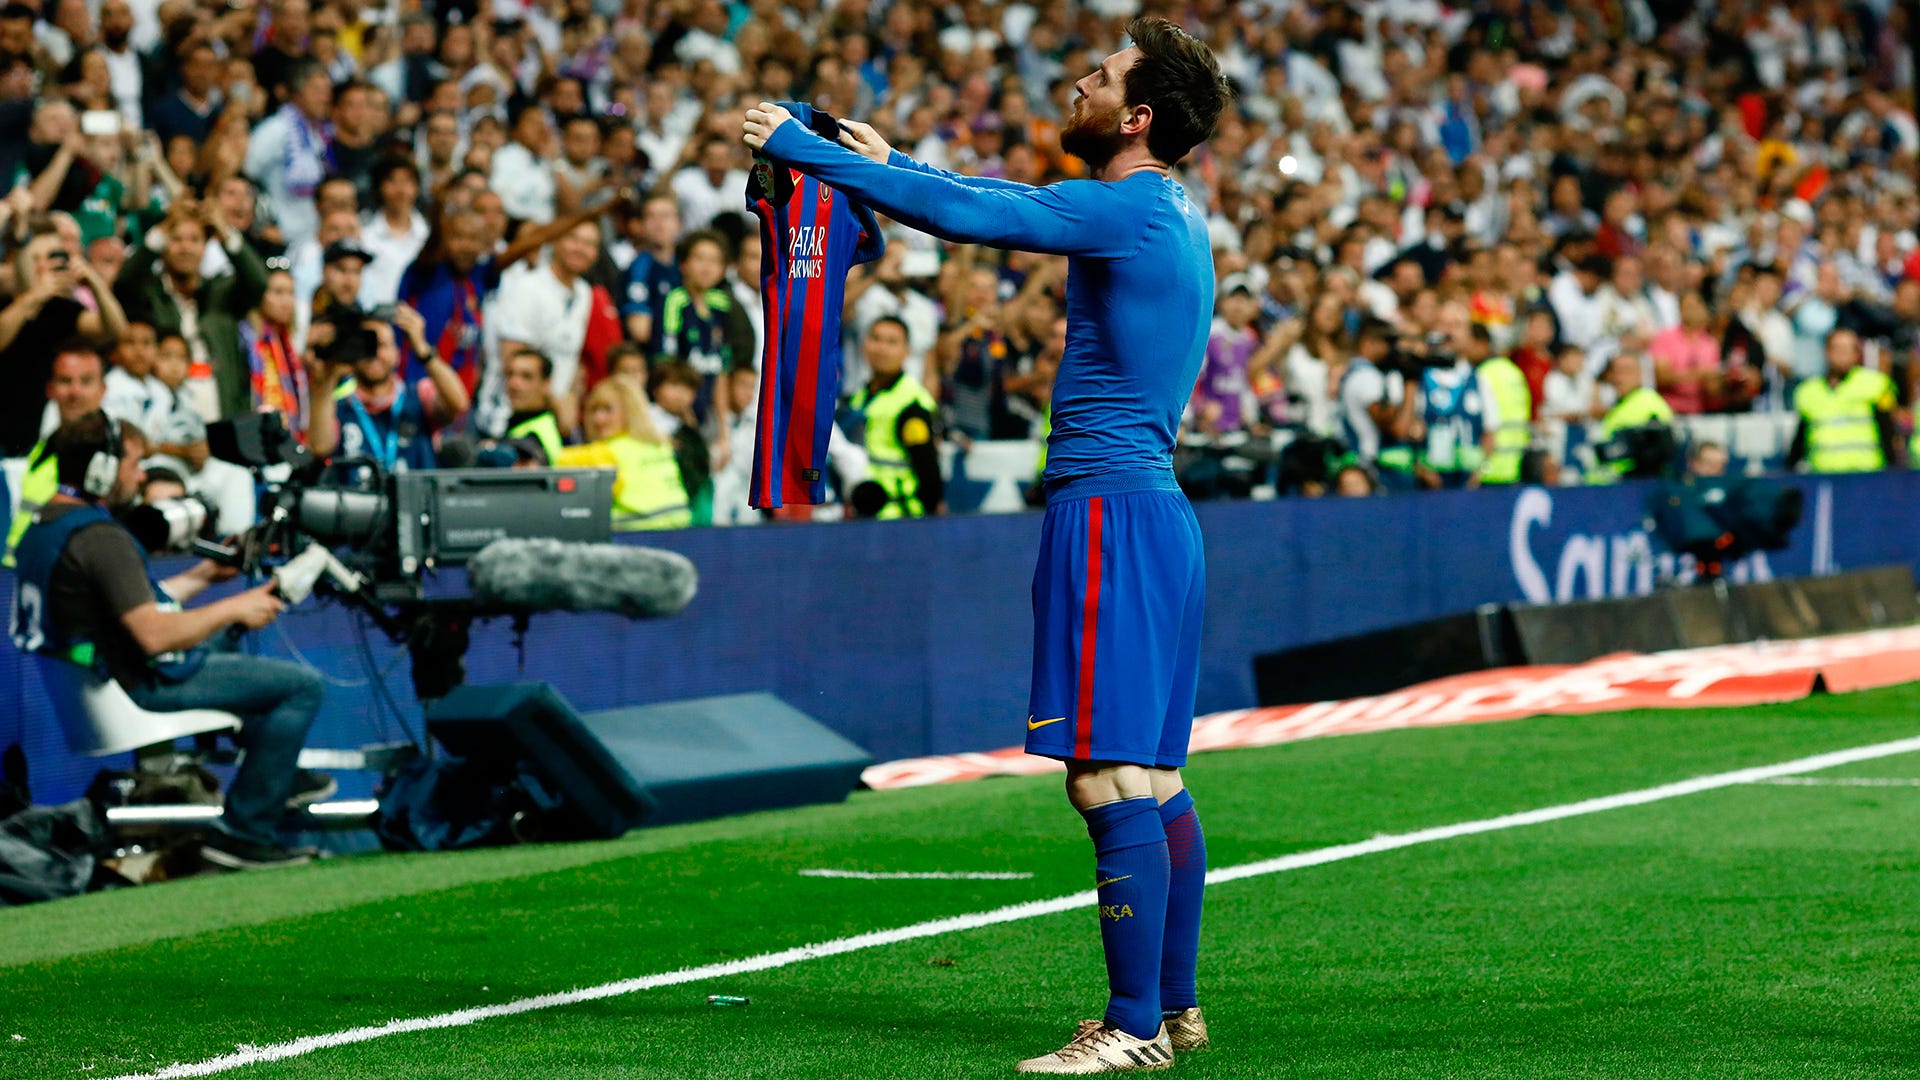 Chỉ cần bước ra đường, bạn sẽ thấy biết bao tín đồ bóng đá hâm mộ cầu thủ Lionel Messi. Hãy tìm hiểu về chiếc áo đấu của Messi và ý nghĩa đằng sau nó.